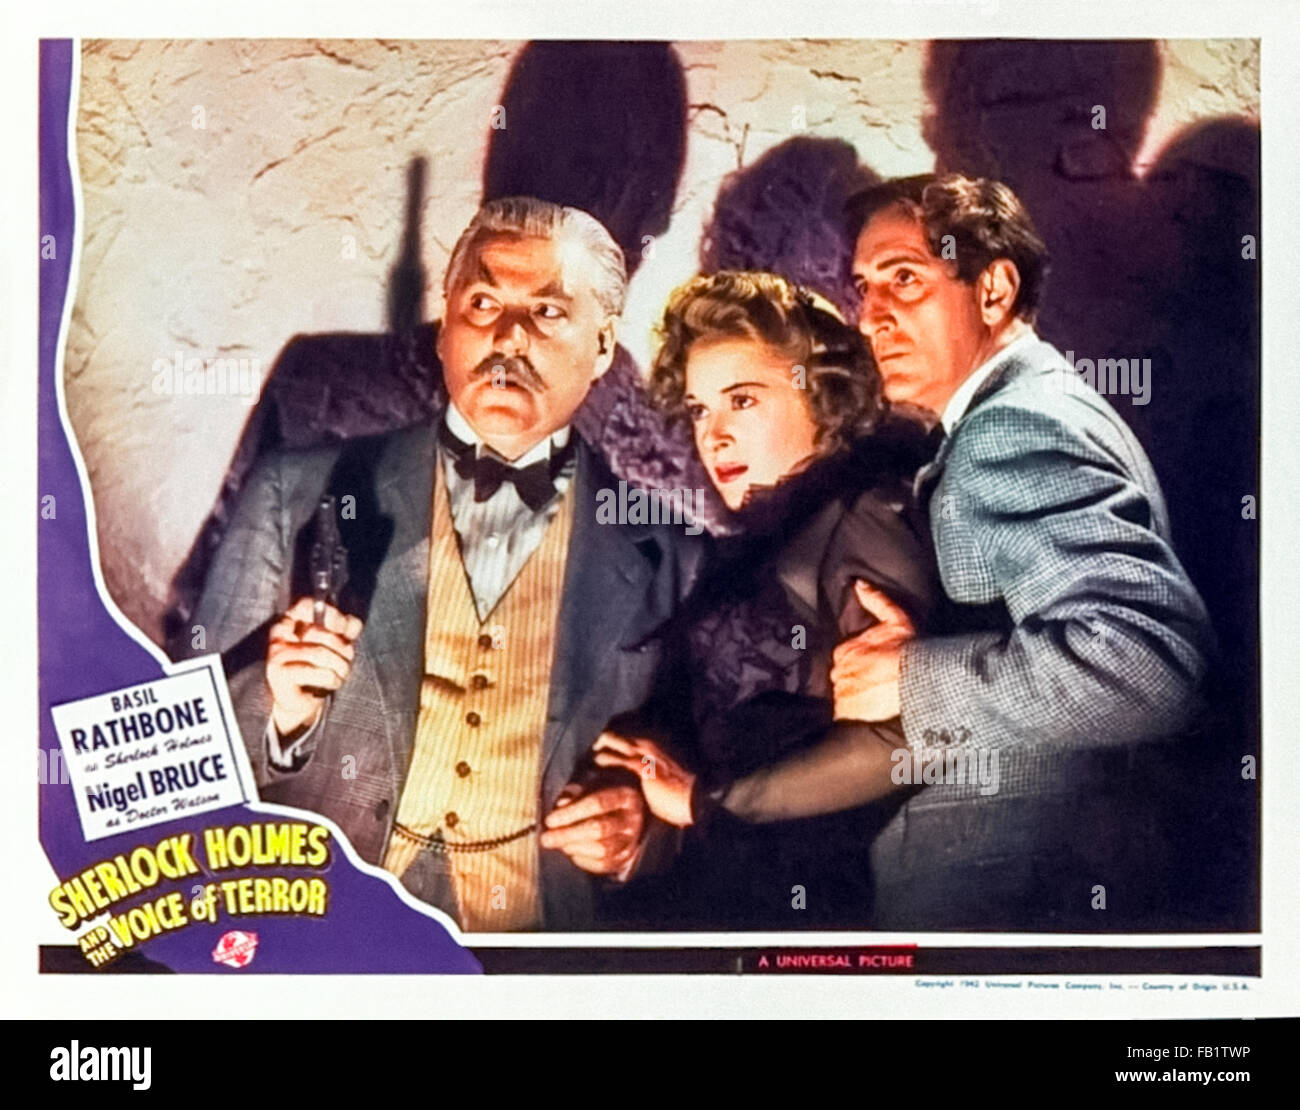 Carte Hall pour Sherlock Holmes et la voix de la terreur' 1942 film réalisé par John Rawlins et avec Basil Rathbone (Holmes) ; Nigel Bruce (Watson) et Evelyn Ankers (Kitty). Voir la description pour plus d'informations. Banque D'Images